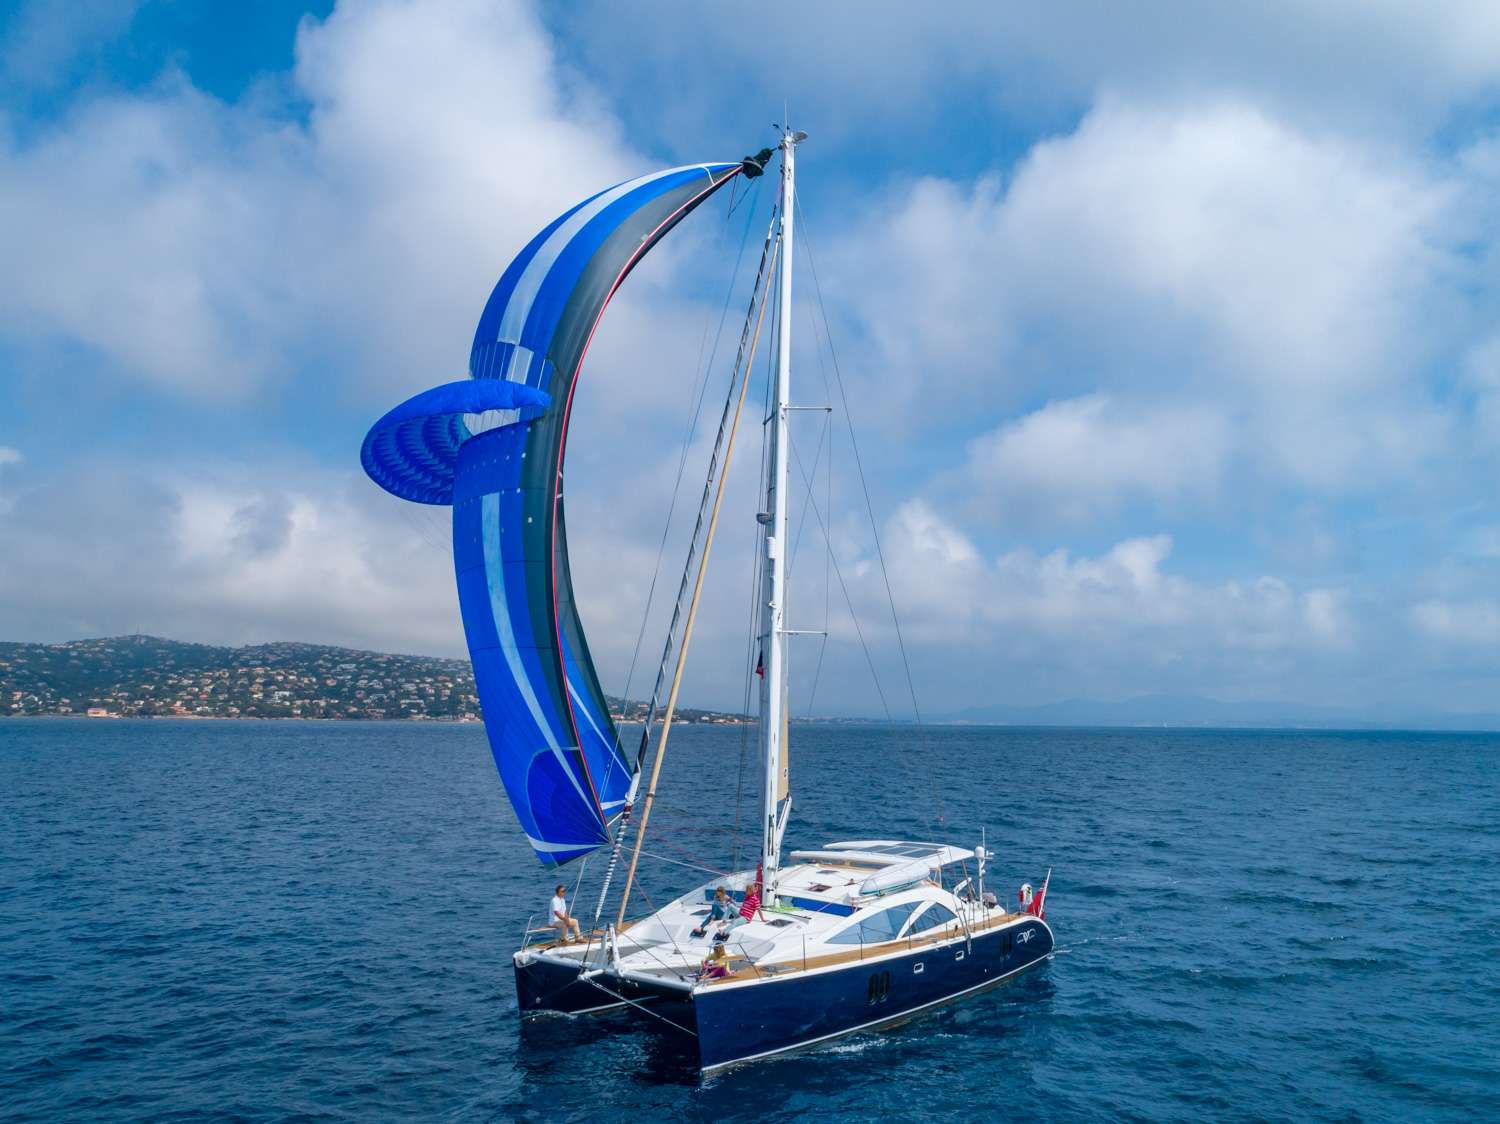 curanta cridhe - Yacht Charter Arzachena & Boat hire in Fr. Riviera & Tyrrhenian Sea 1